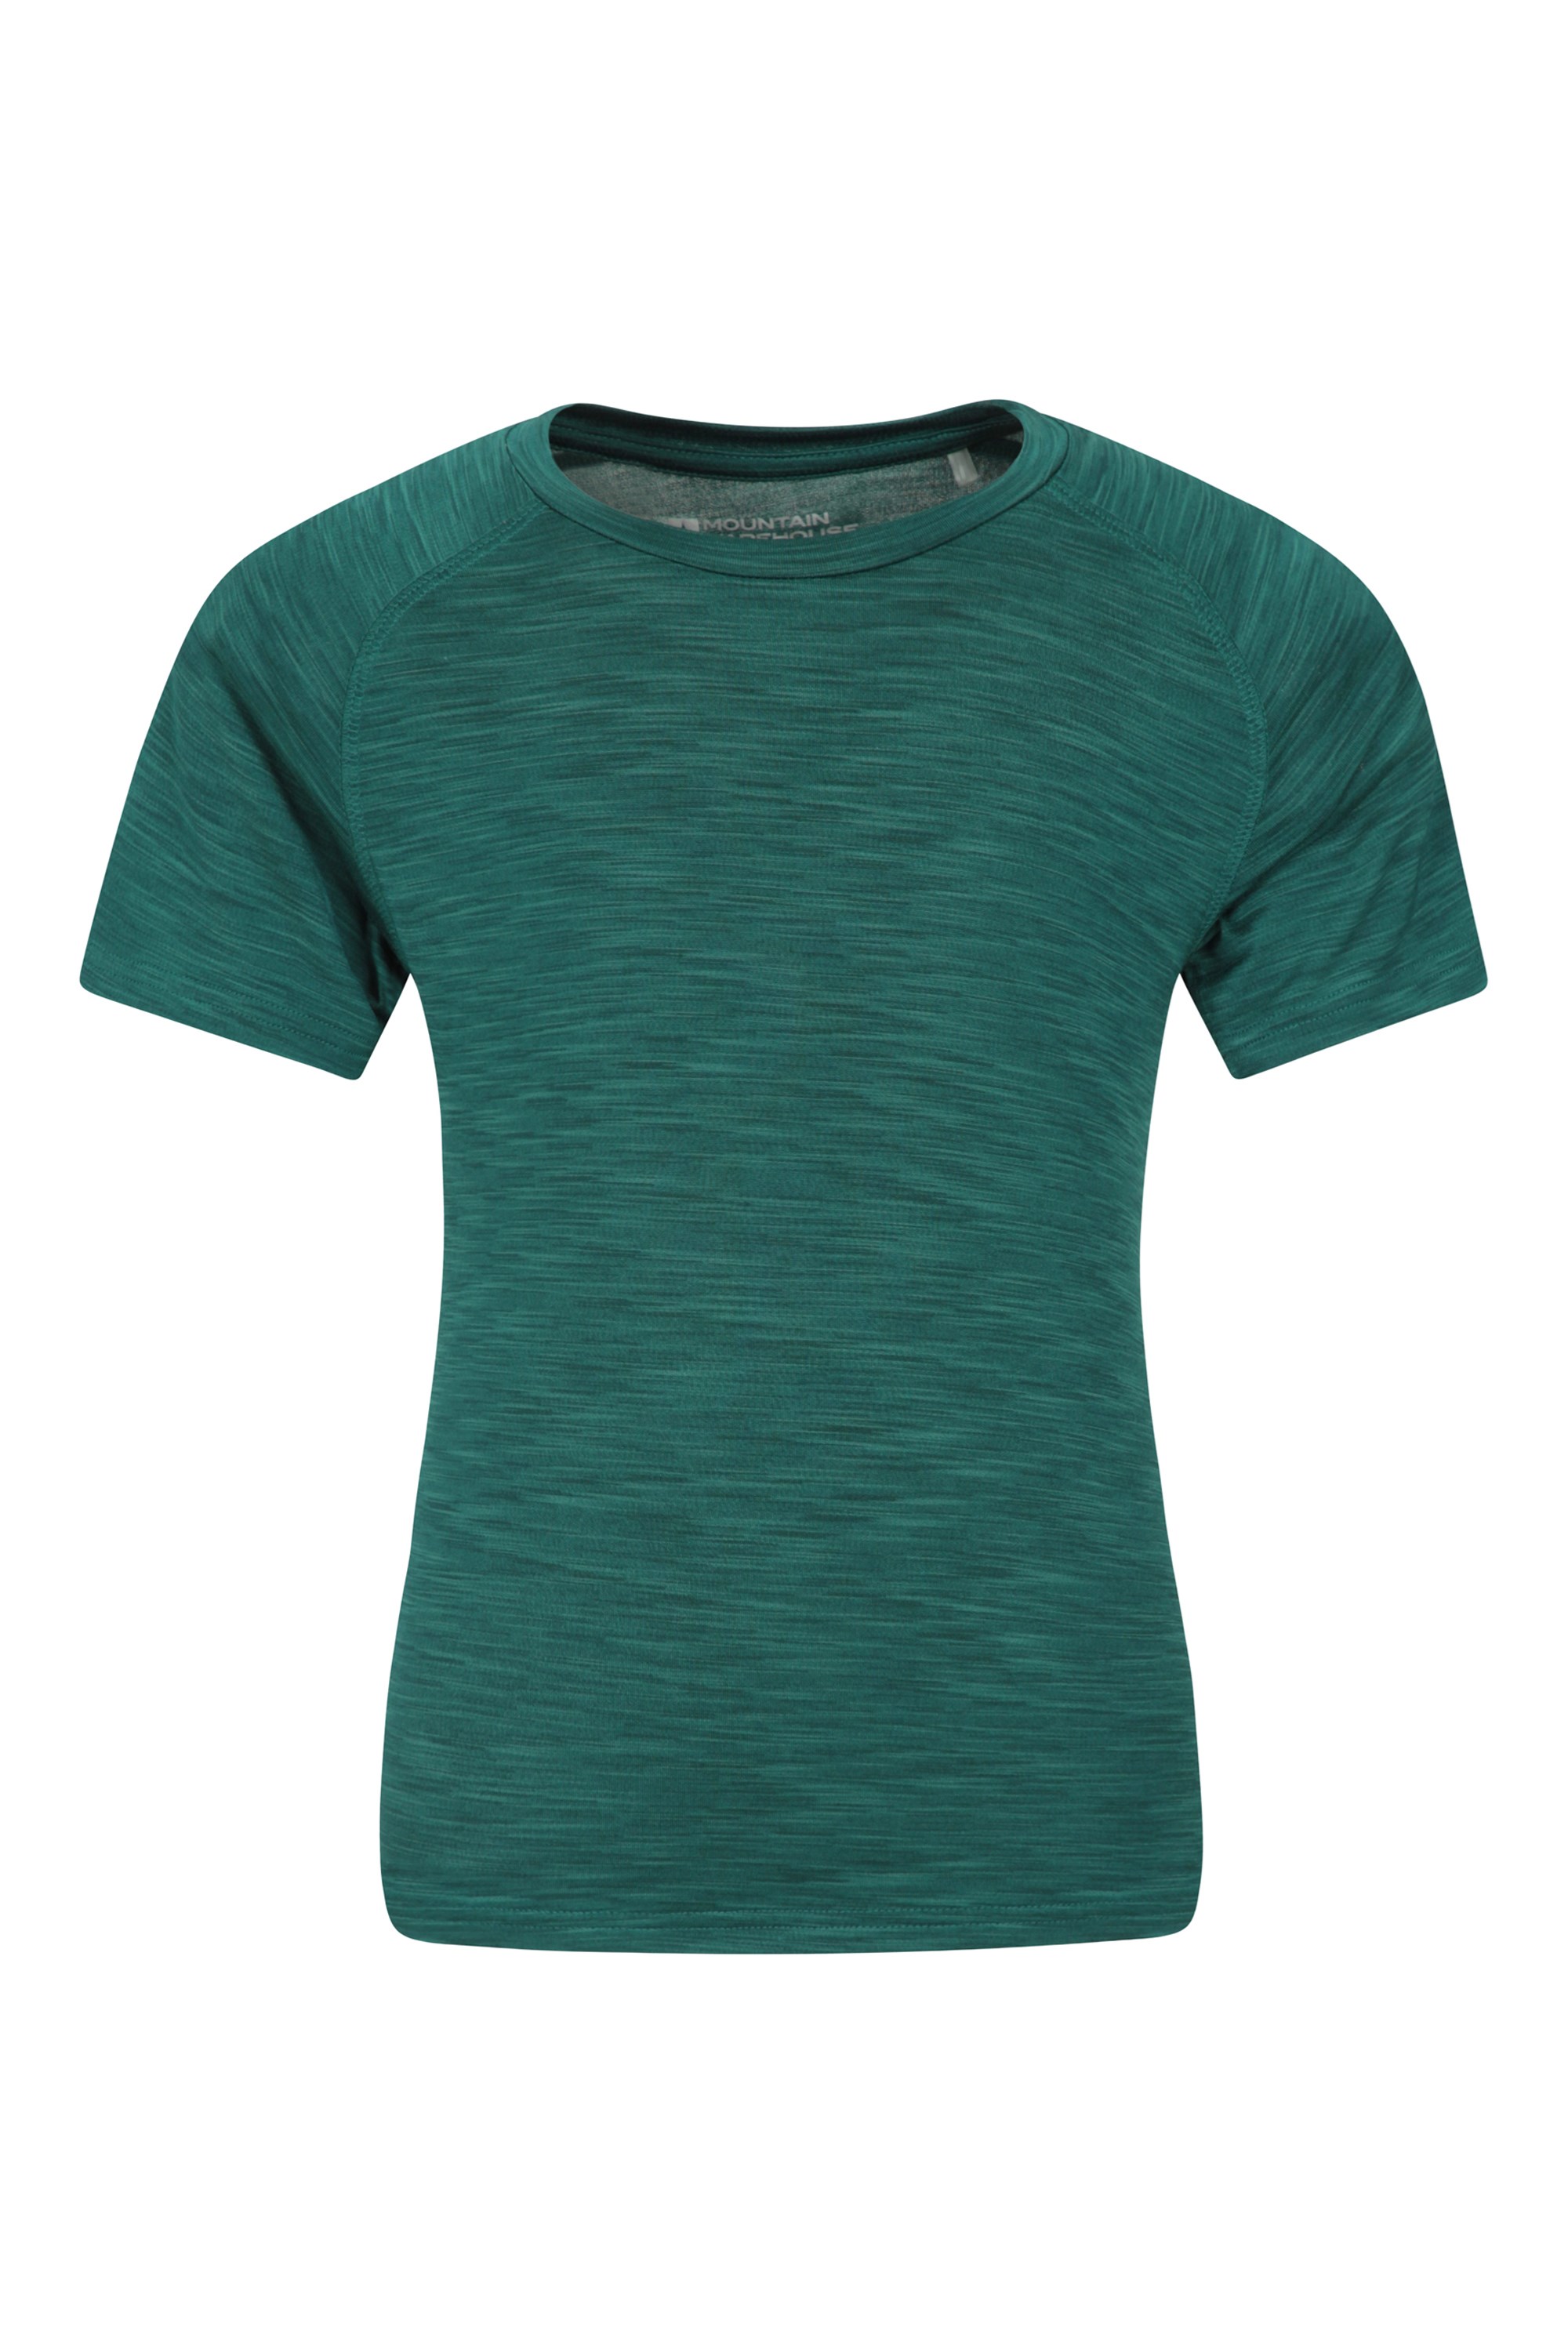 T-shirt Space Dye garçon - Vert